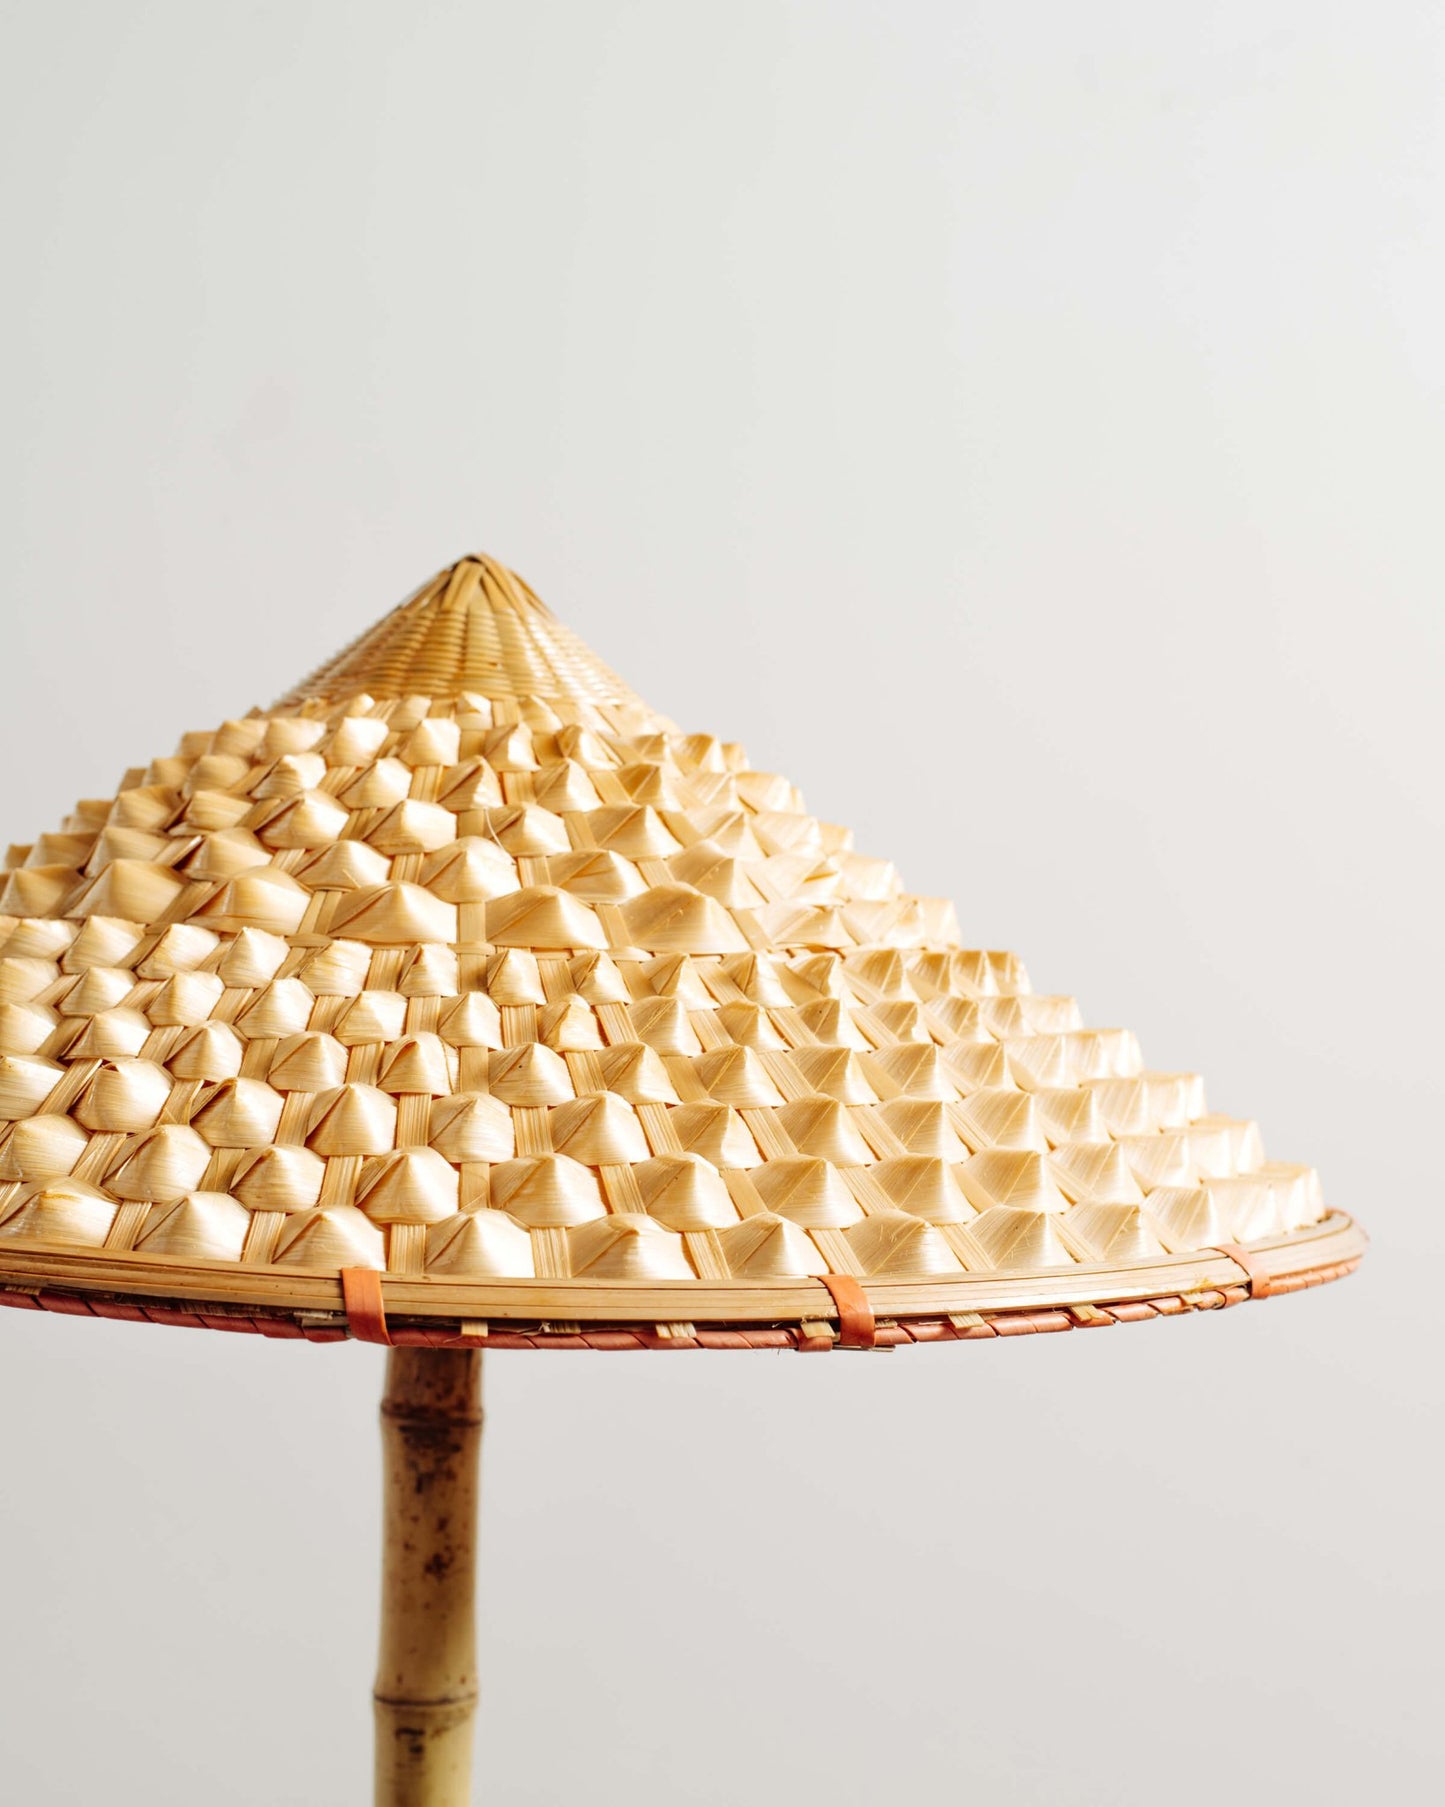 'Pagoda' Bamboo Floor Lamp with 'Pangolin' Shade and Coiled Seagrass Base — Model No. 011 - Tennant New York